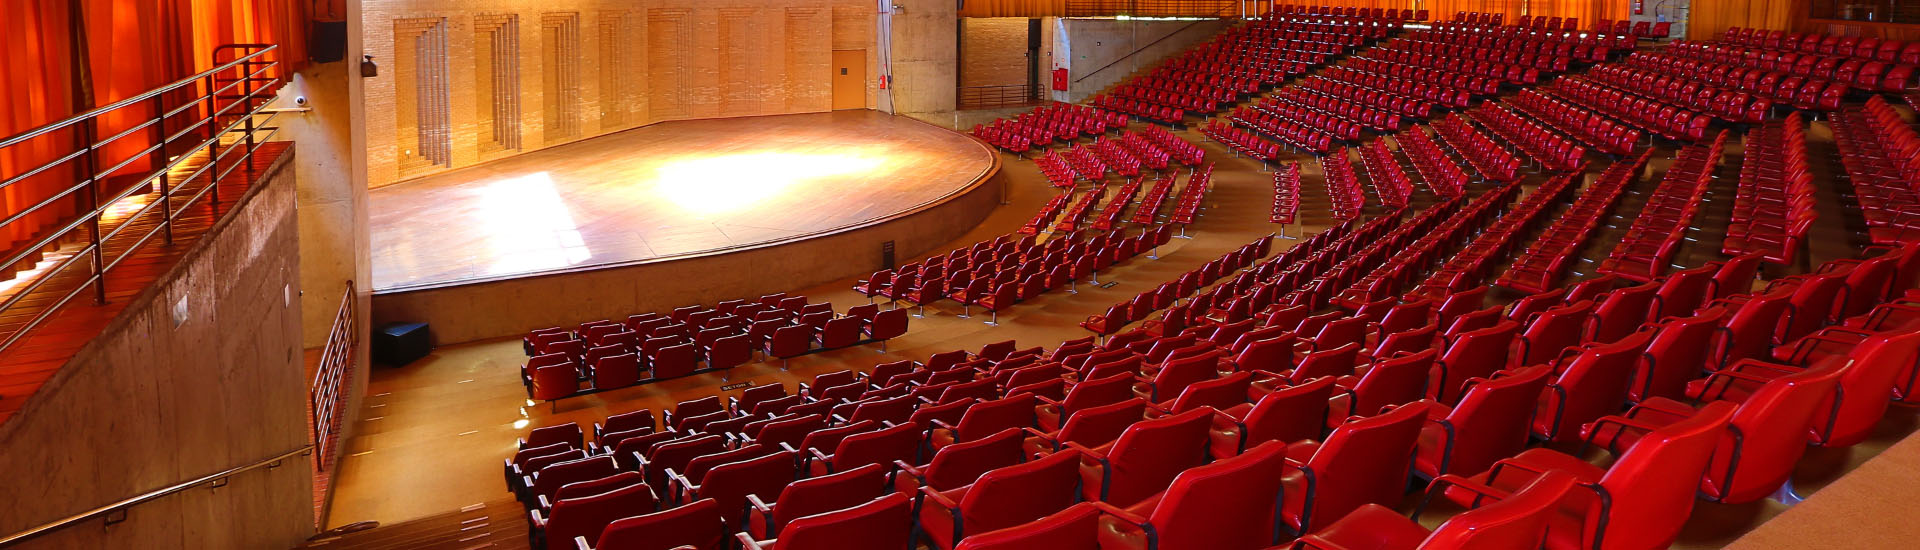 Na imagem há o palco do Auditório Claudio Santoro em primeiro plano e em segundo plano poltronas vermelhas divididas em cinco setores. Acima há estrutura arquitetônica do Auditório com recortes da laje. E aos fundos do espaço, há cortinas laranjas.